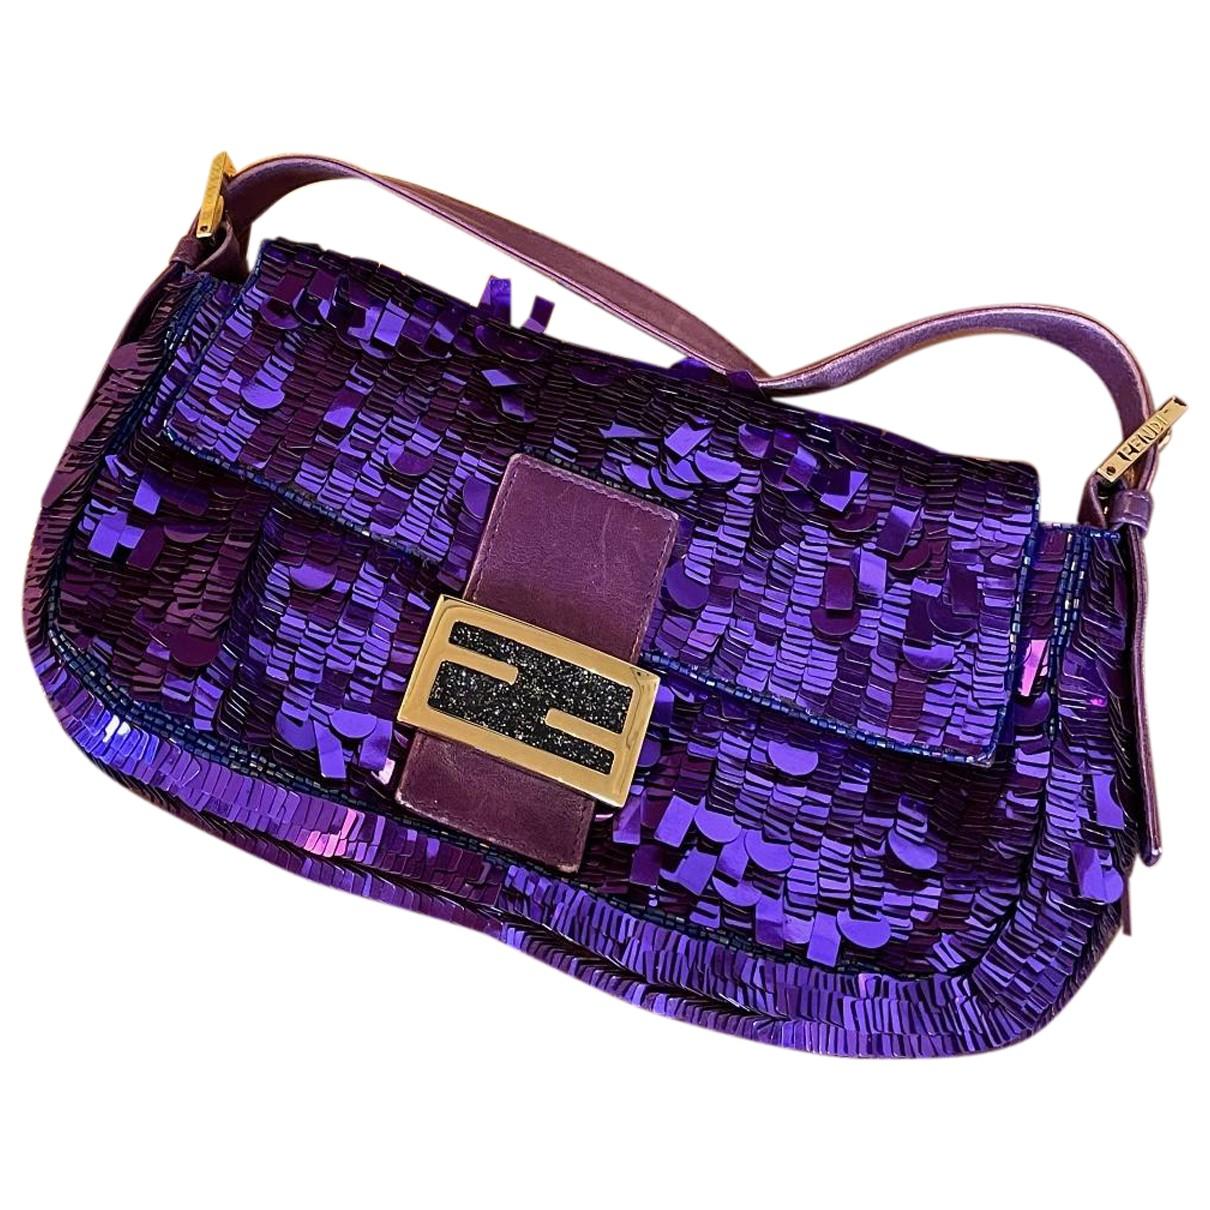 Baguette glitter handbag Fendi Purple in Glitter - 21083895